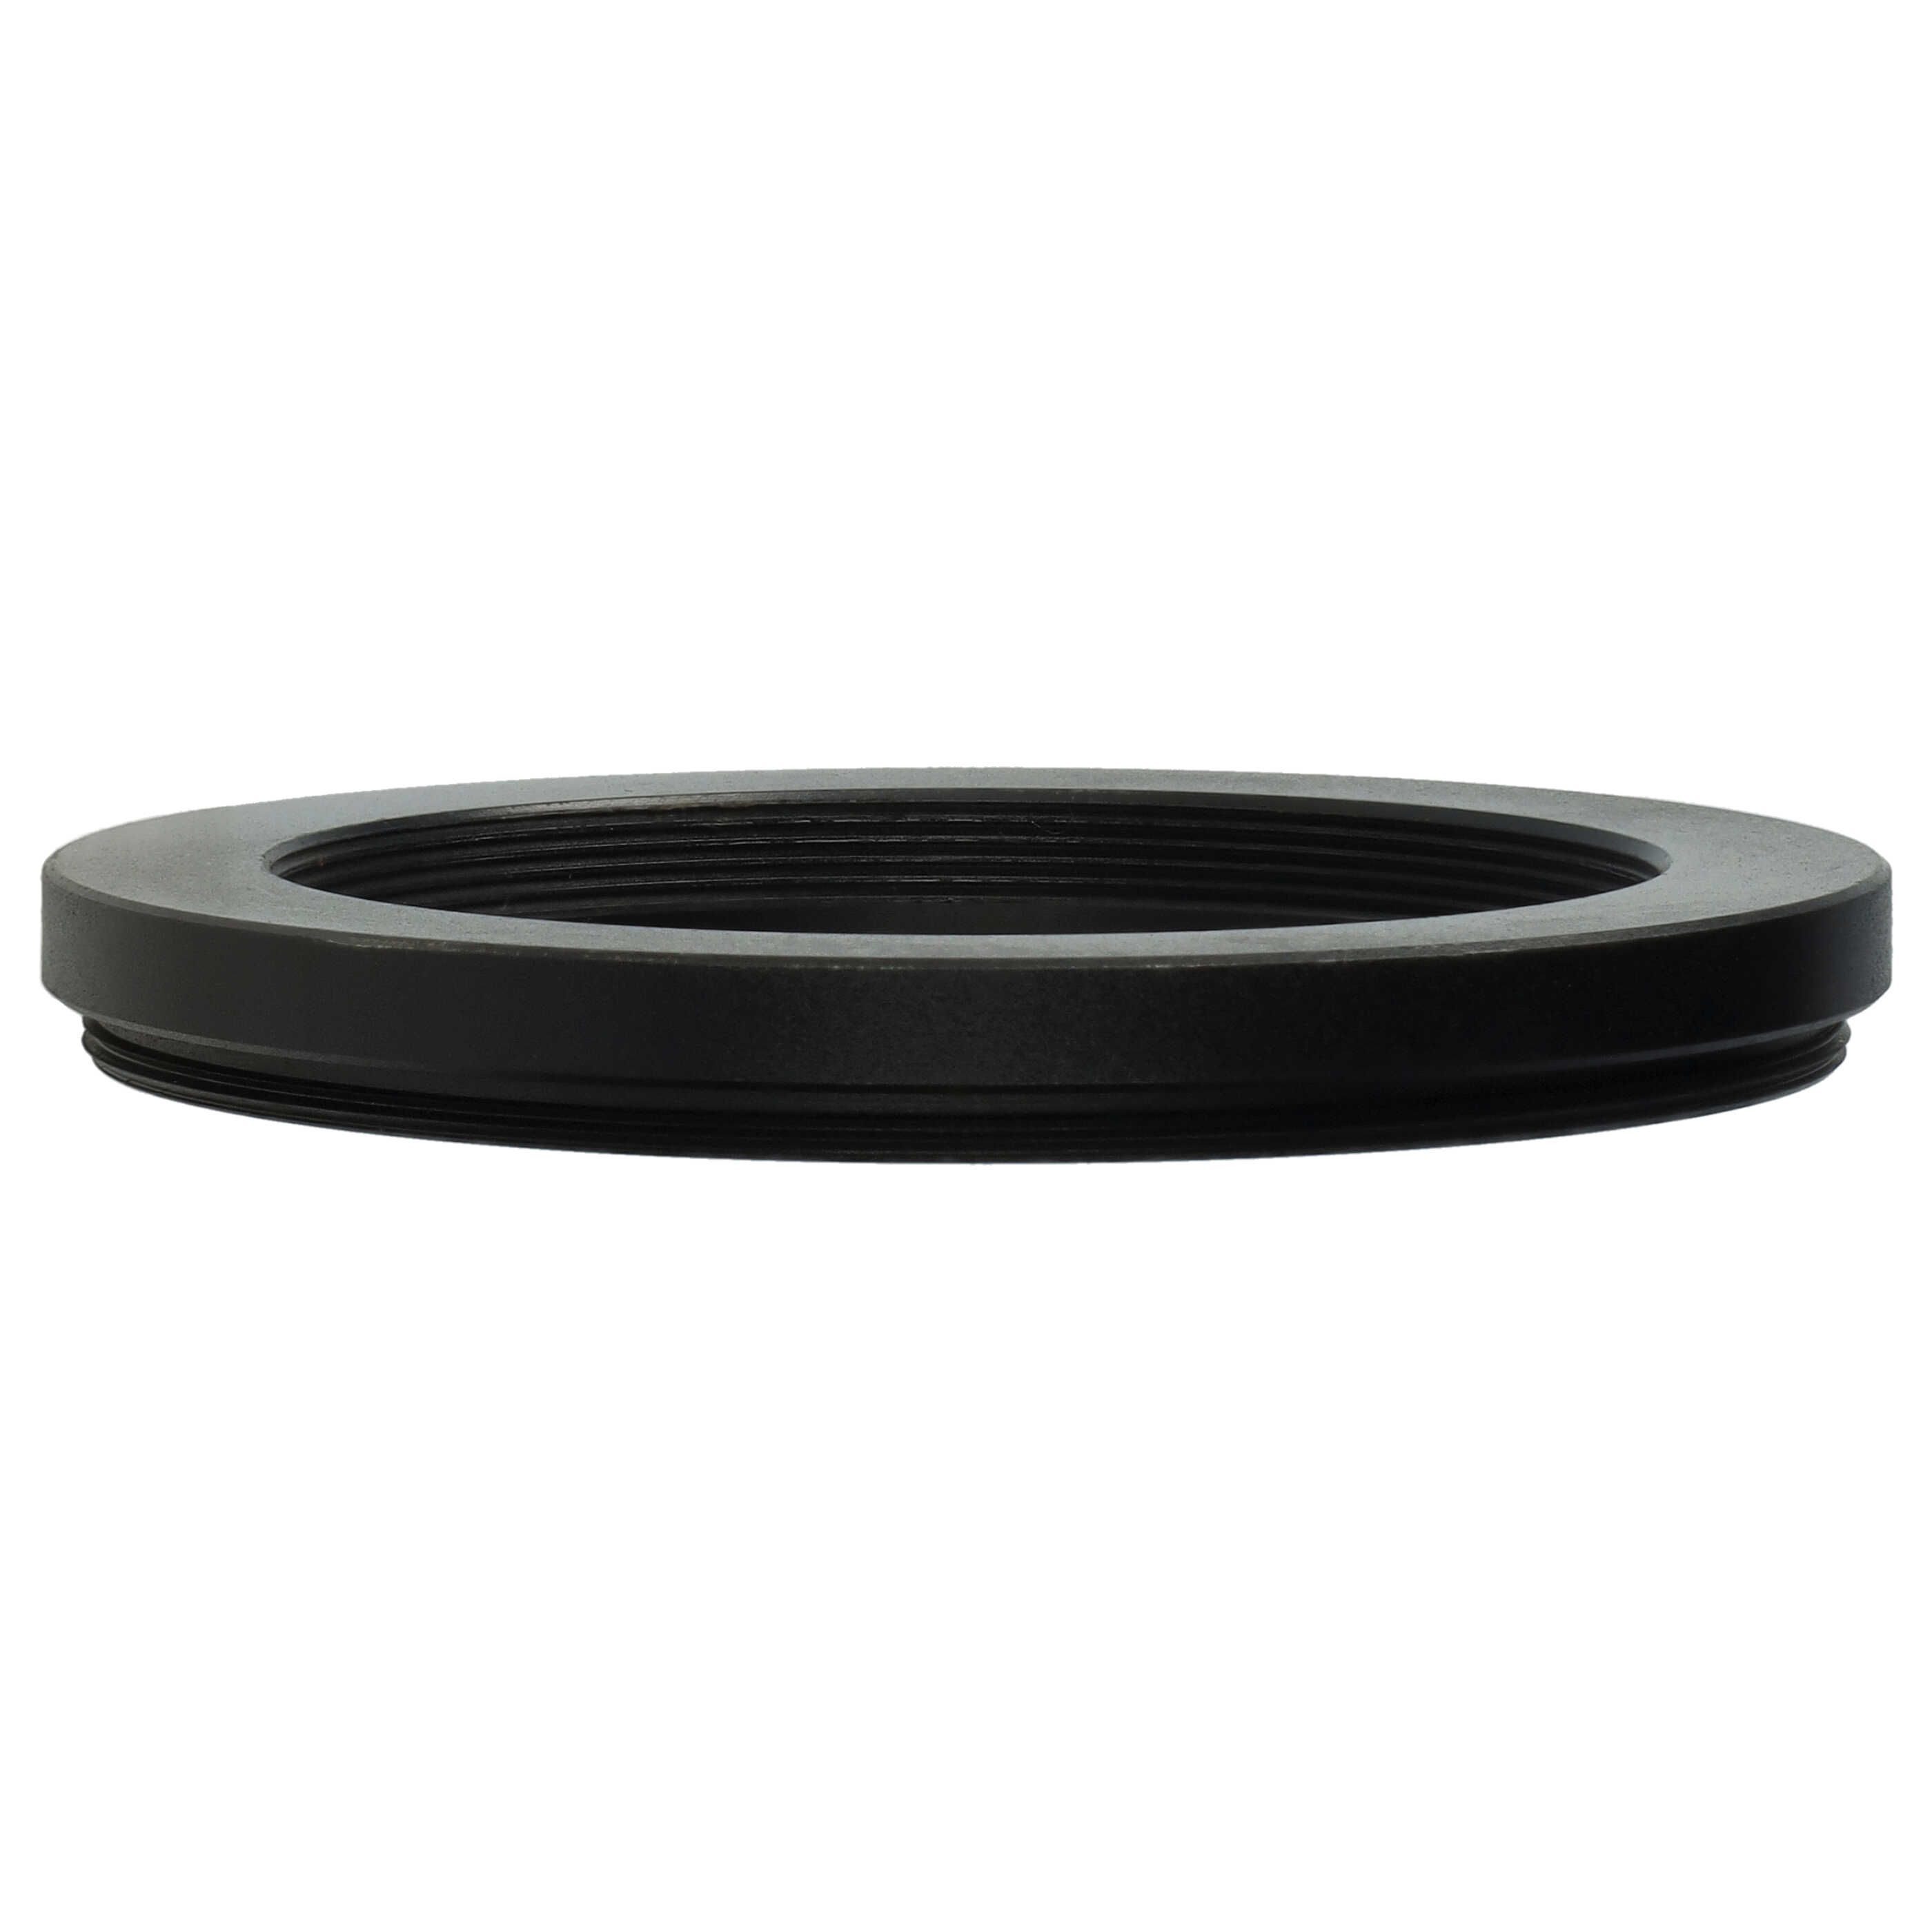 Anello adattatore step-down da 62 mm a 49 mm per obiettivo fotocamera - Adattatore filtro, metallo, nero